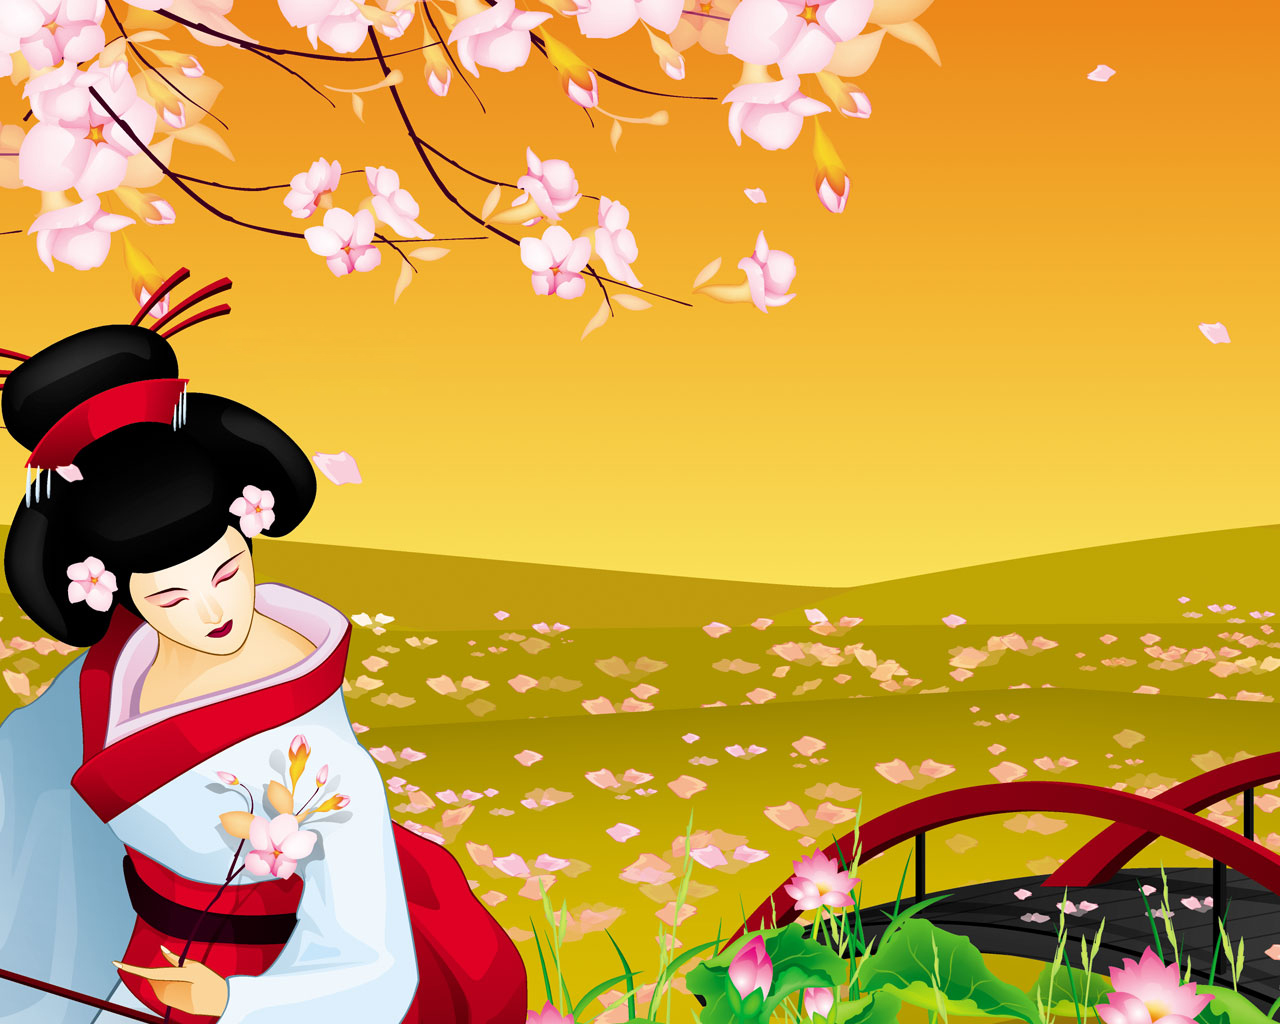 asian themed wallpaper,cartoon,illustration,spring,plant,blossom